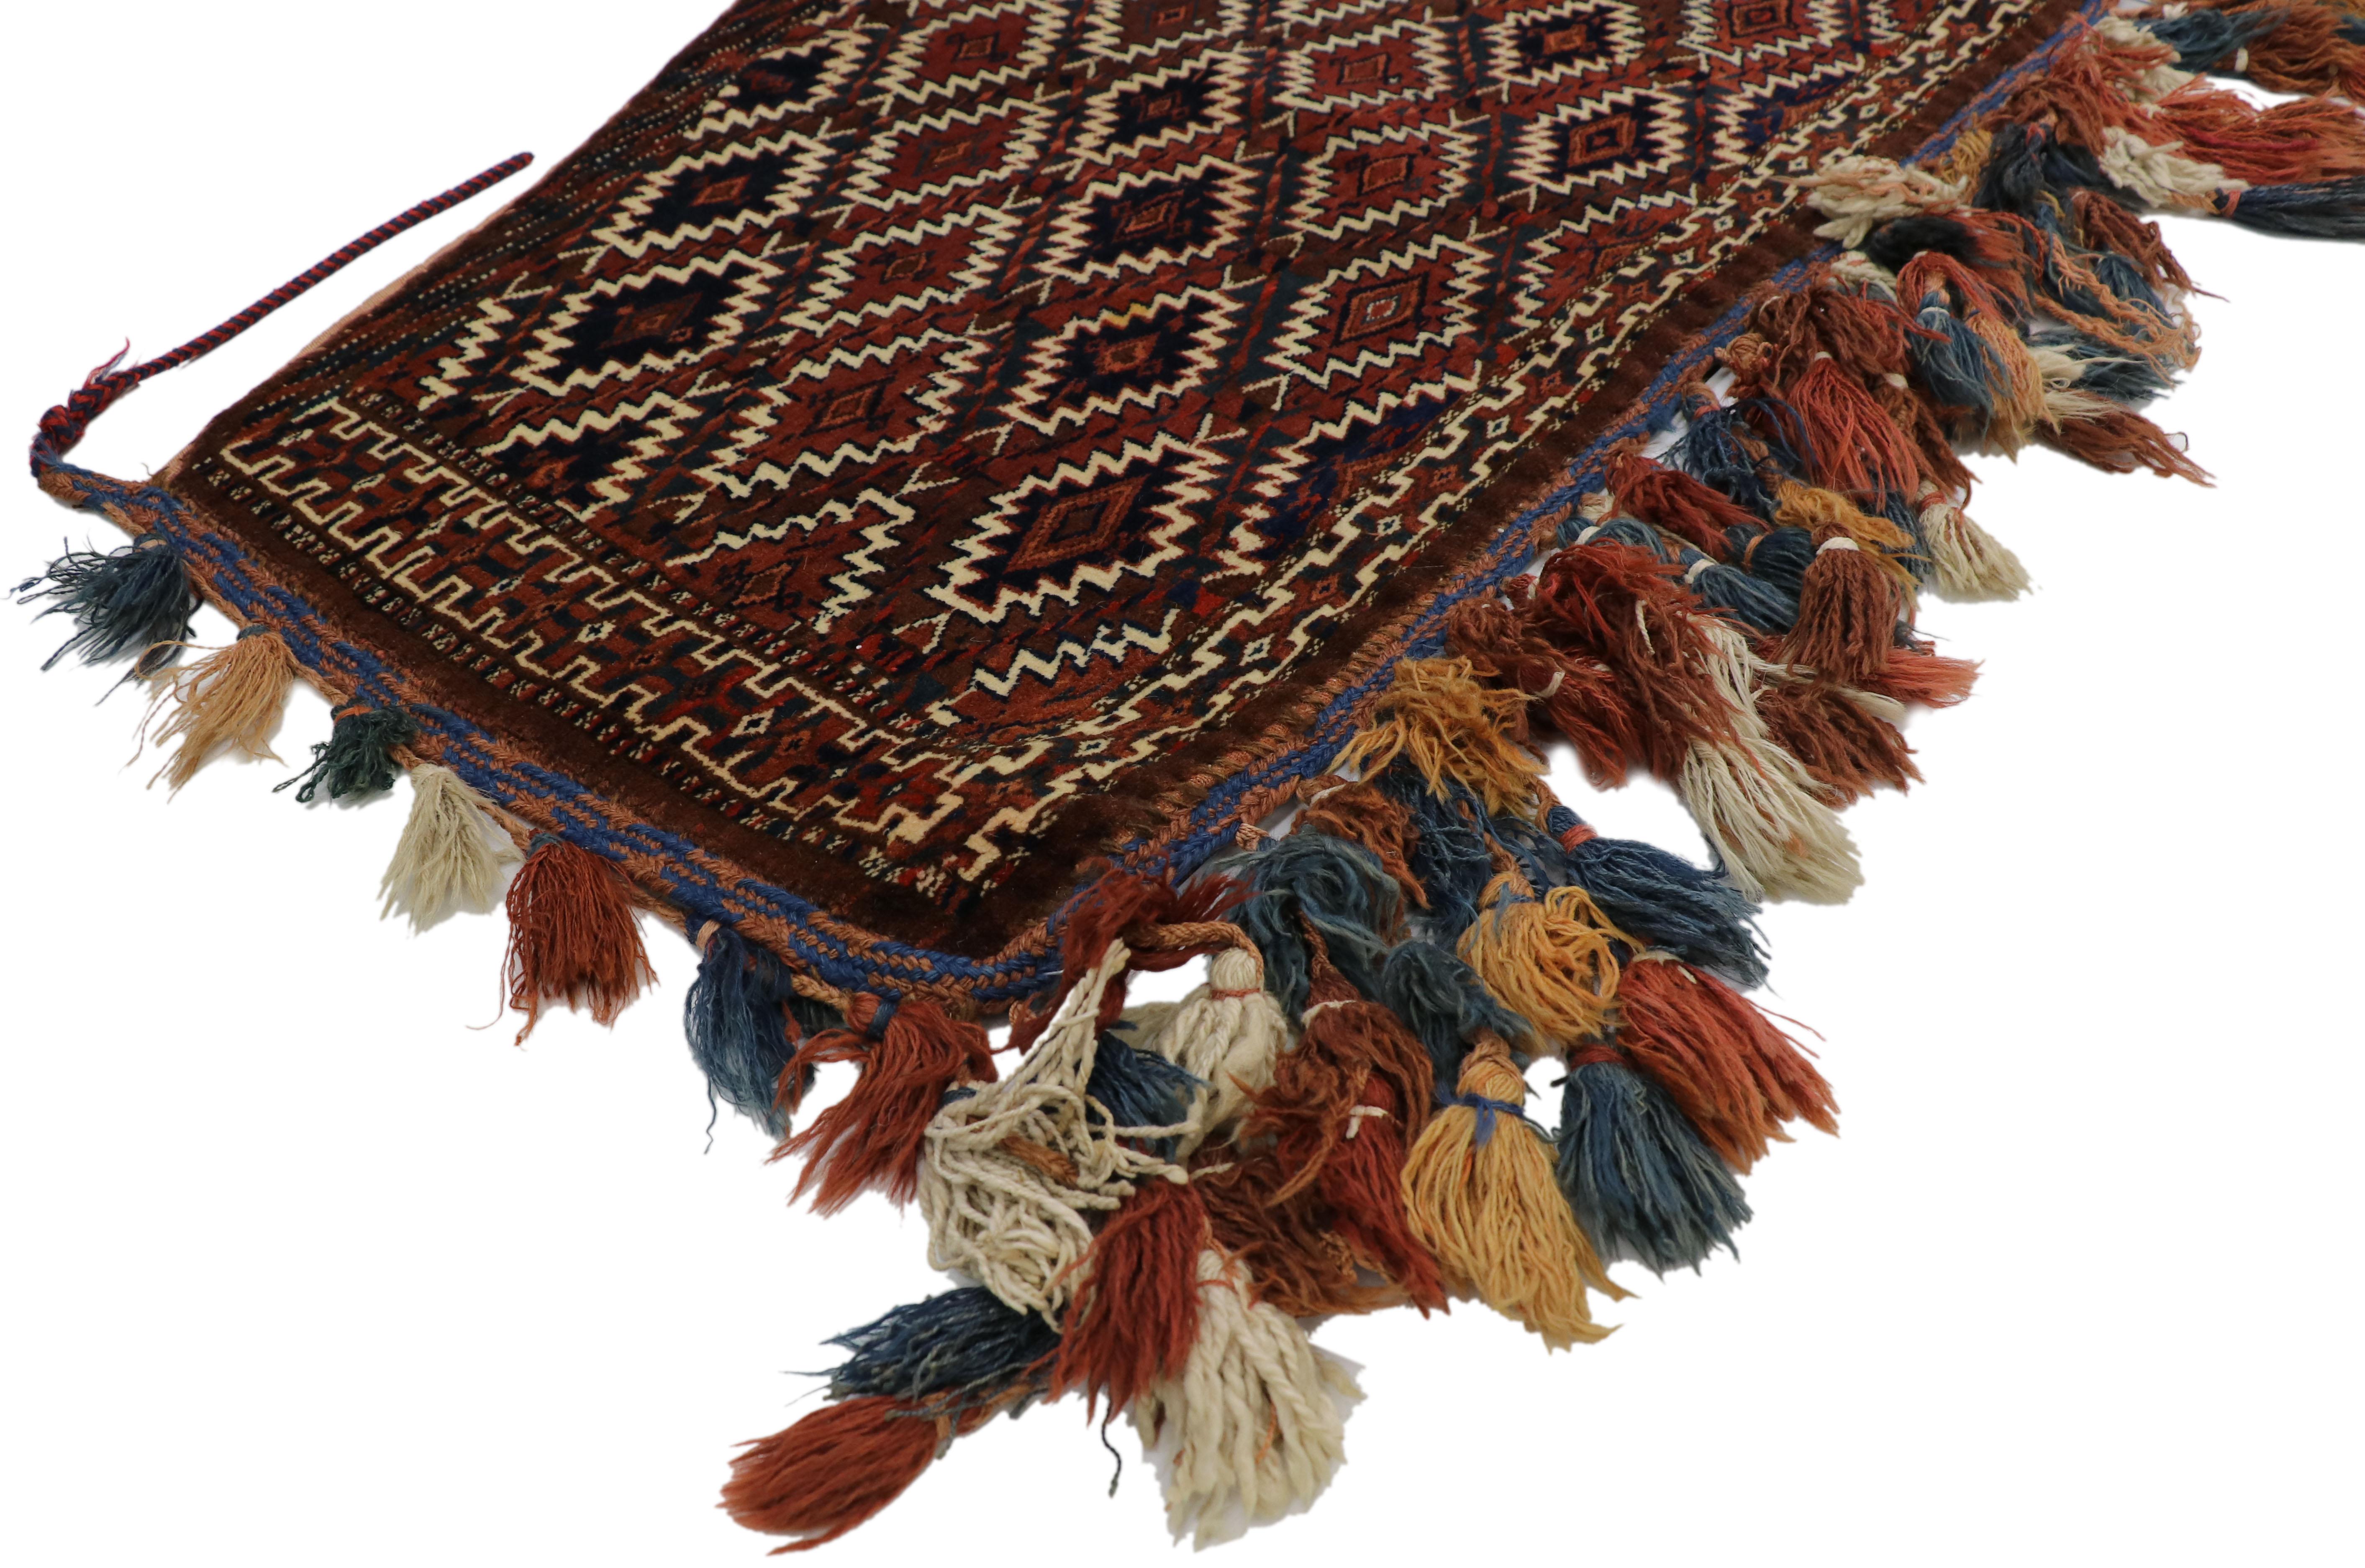 76630, antiker afghanischer Belutsch-Kamelfang, Asmalyk Yomut Turkmen Wandbehang Stammestextil. Diese handgeknüpfte Wolle antiker afghanischer Belutschen ist als Kamelfang oder Asmalyk bekannt. Es handelt sich um ein fünfseitiges Stammesgewebe, das